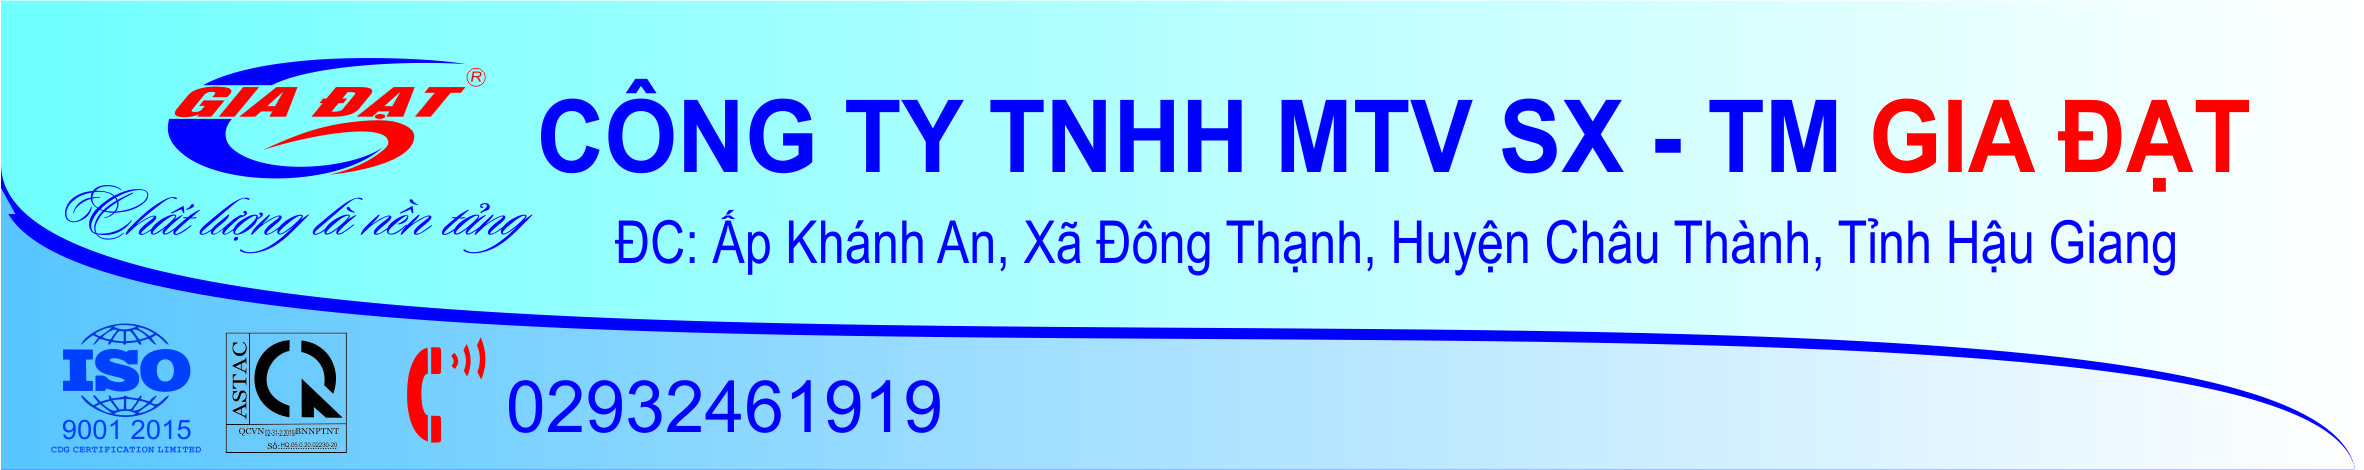 Công ty TNHH MTV SX - TM Gia Đạt